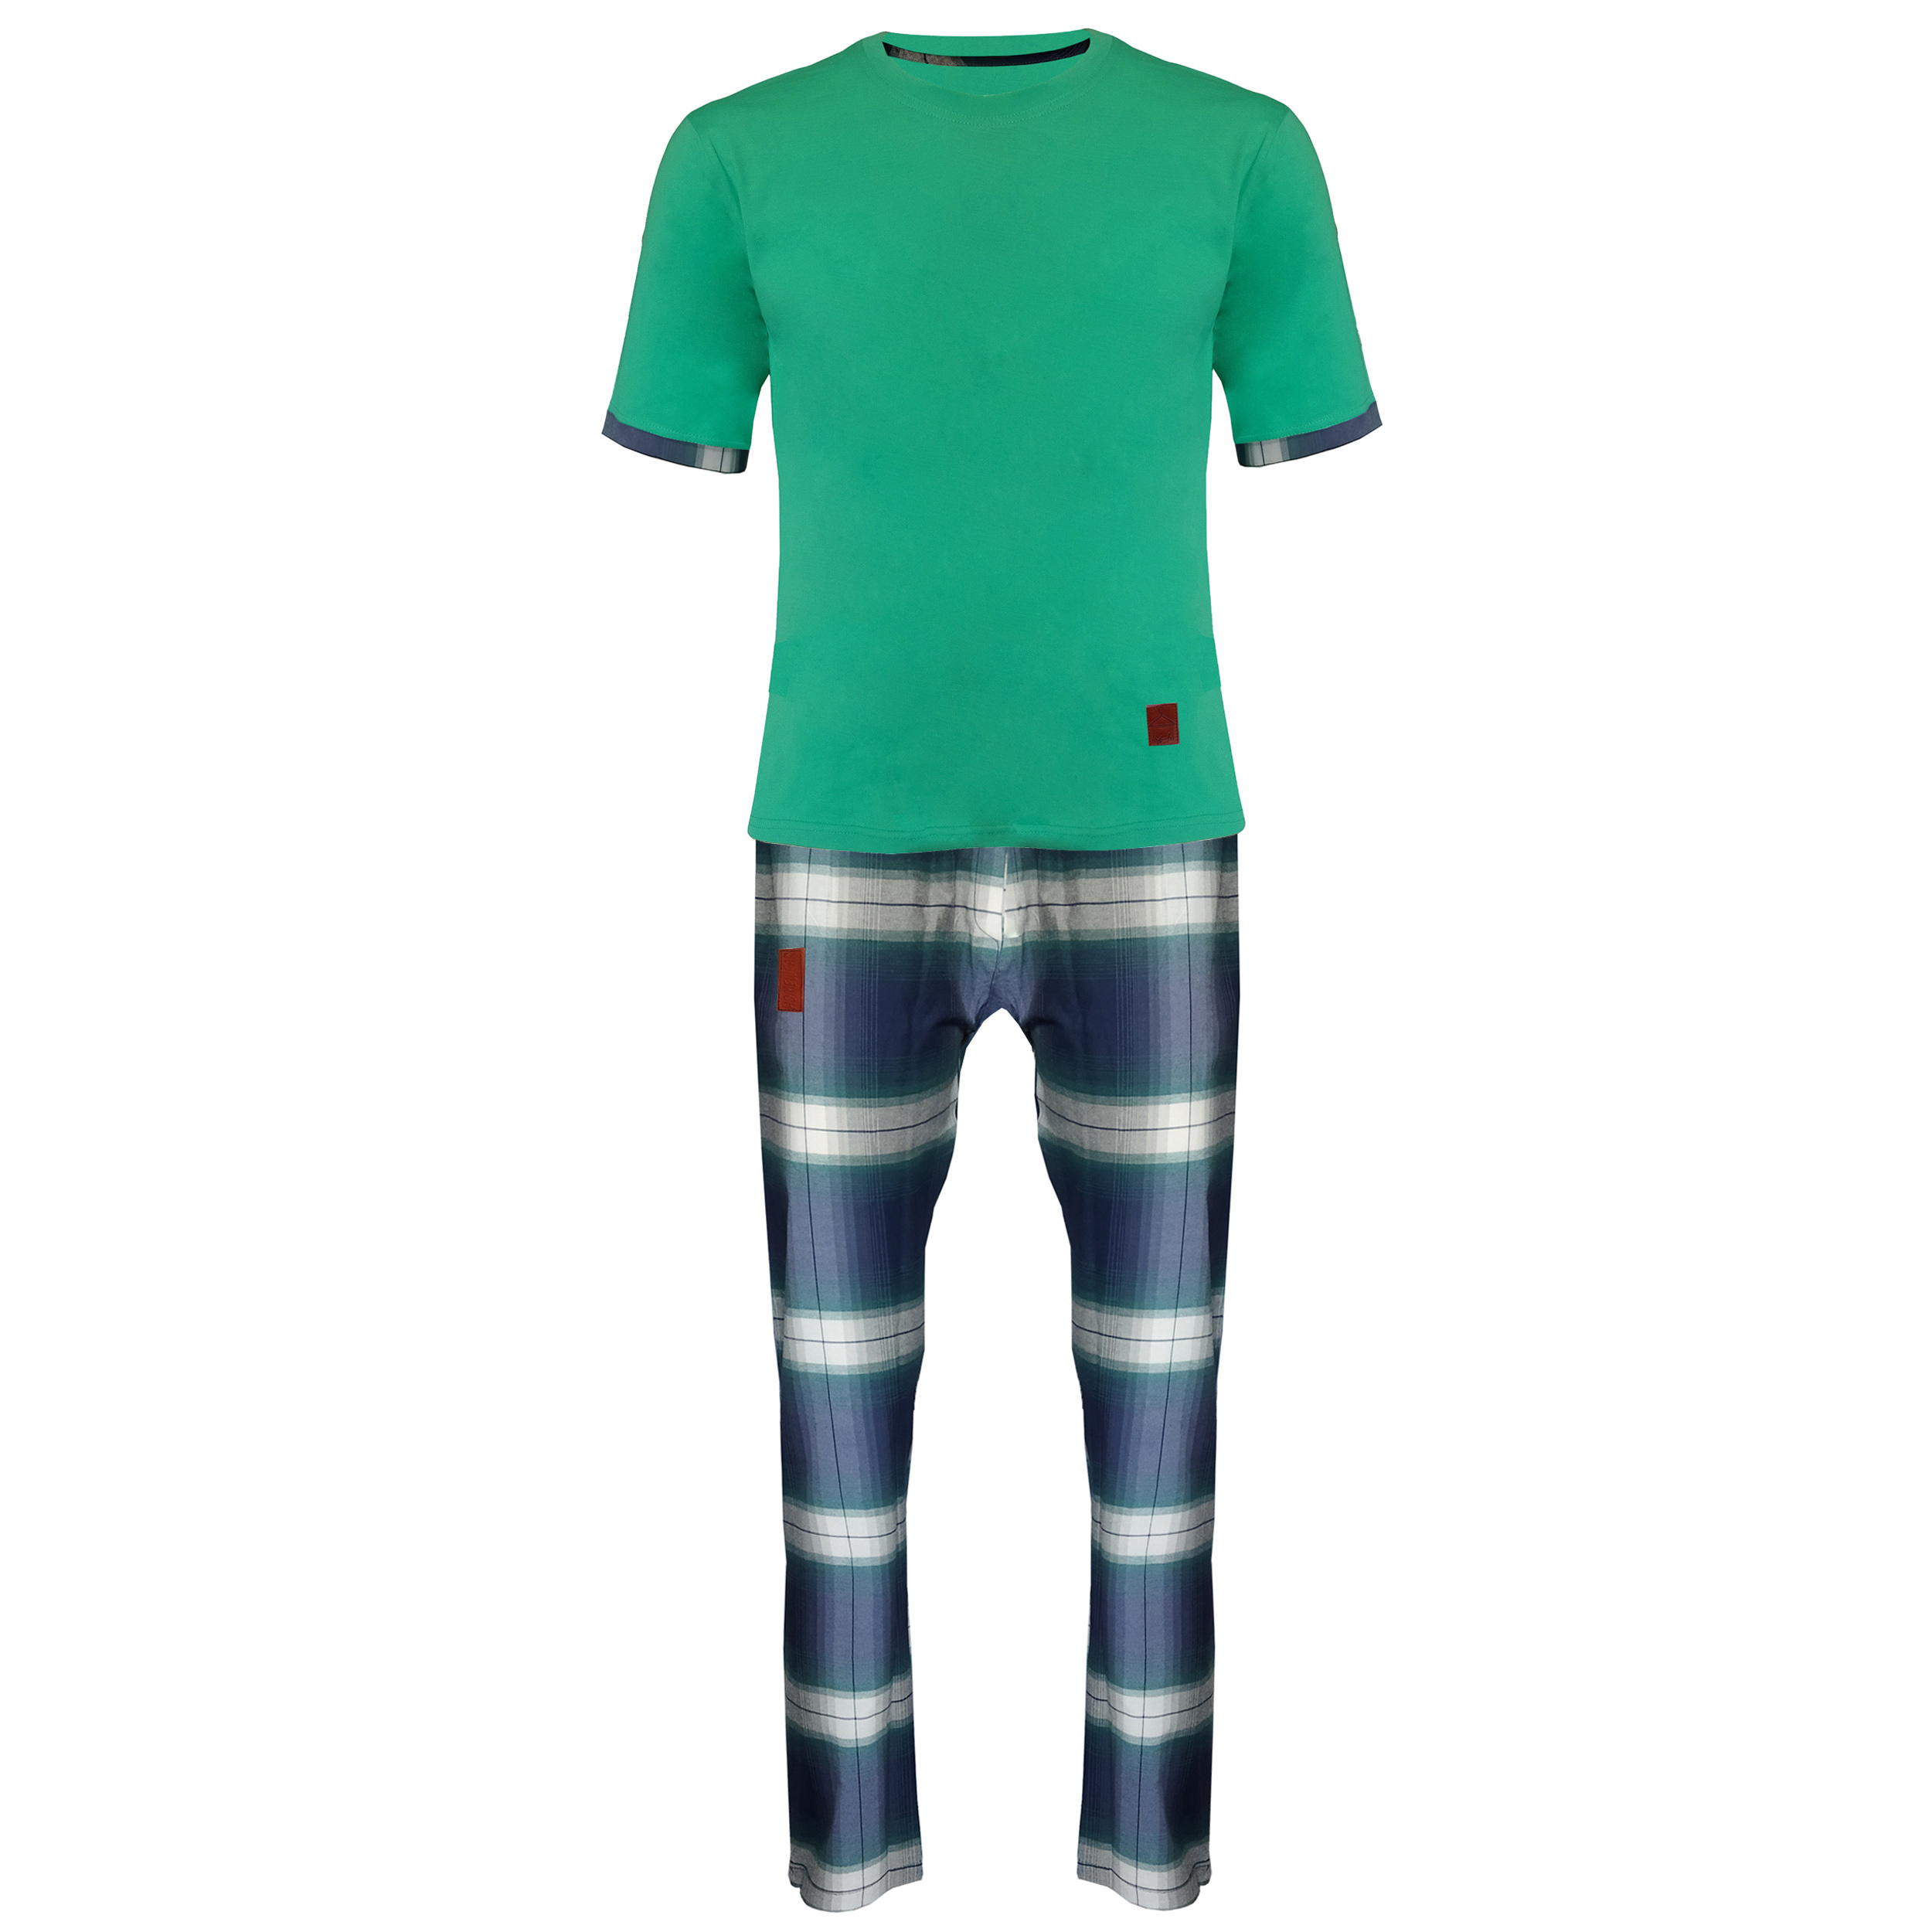 ست تی شرت و شلوار مردانه مدل طه 000920 کد 7853041 رنگ سبز بنتون